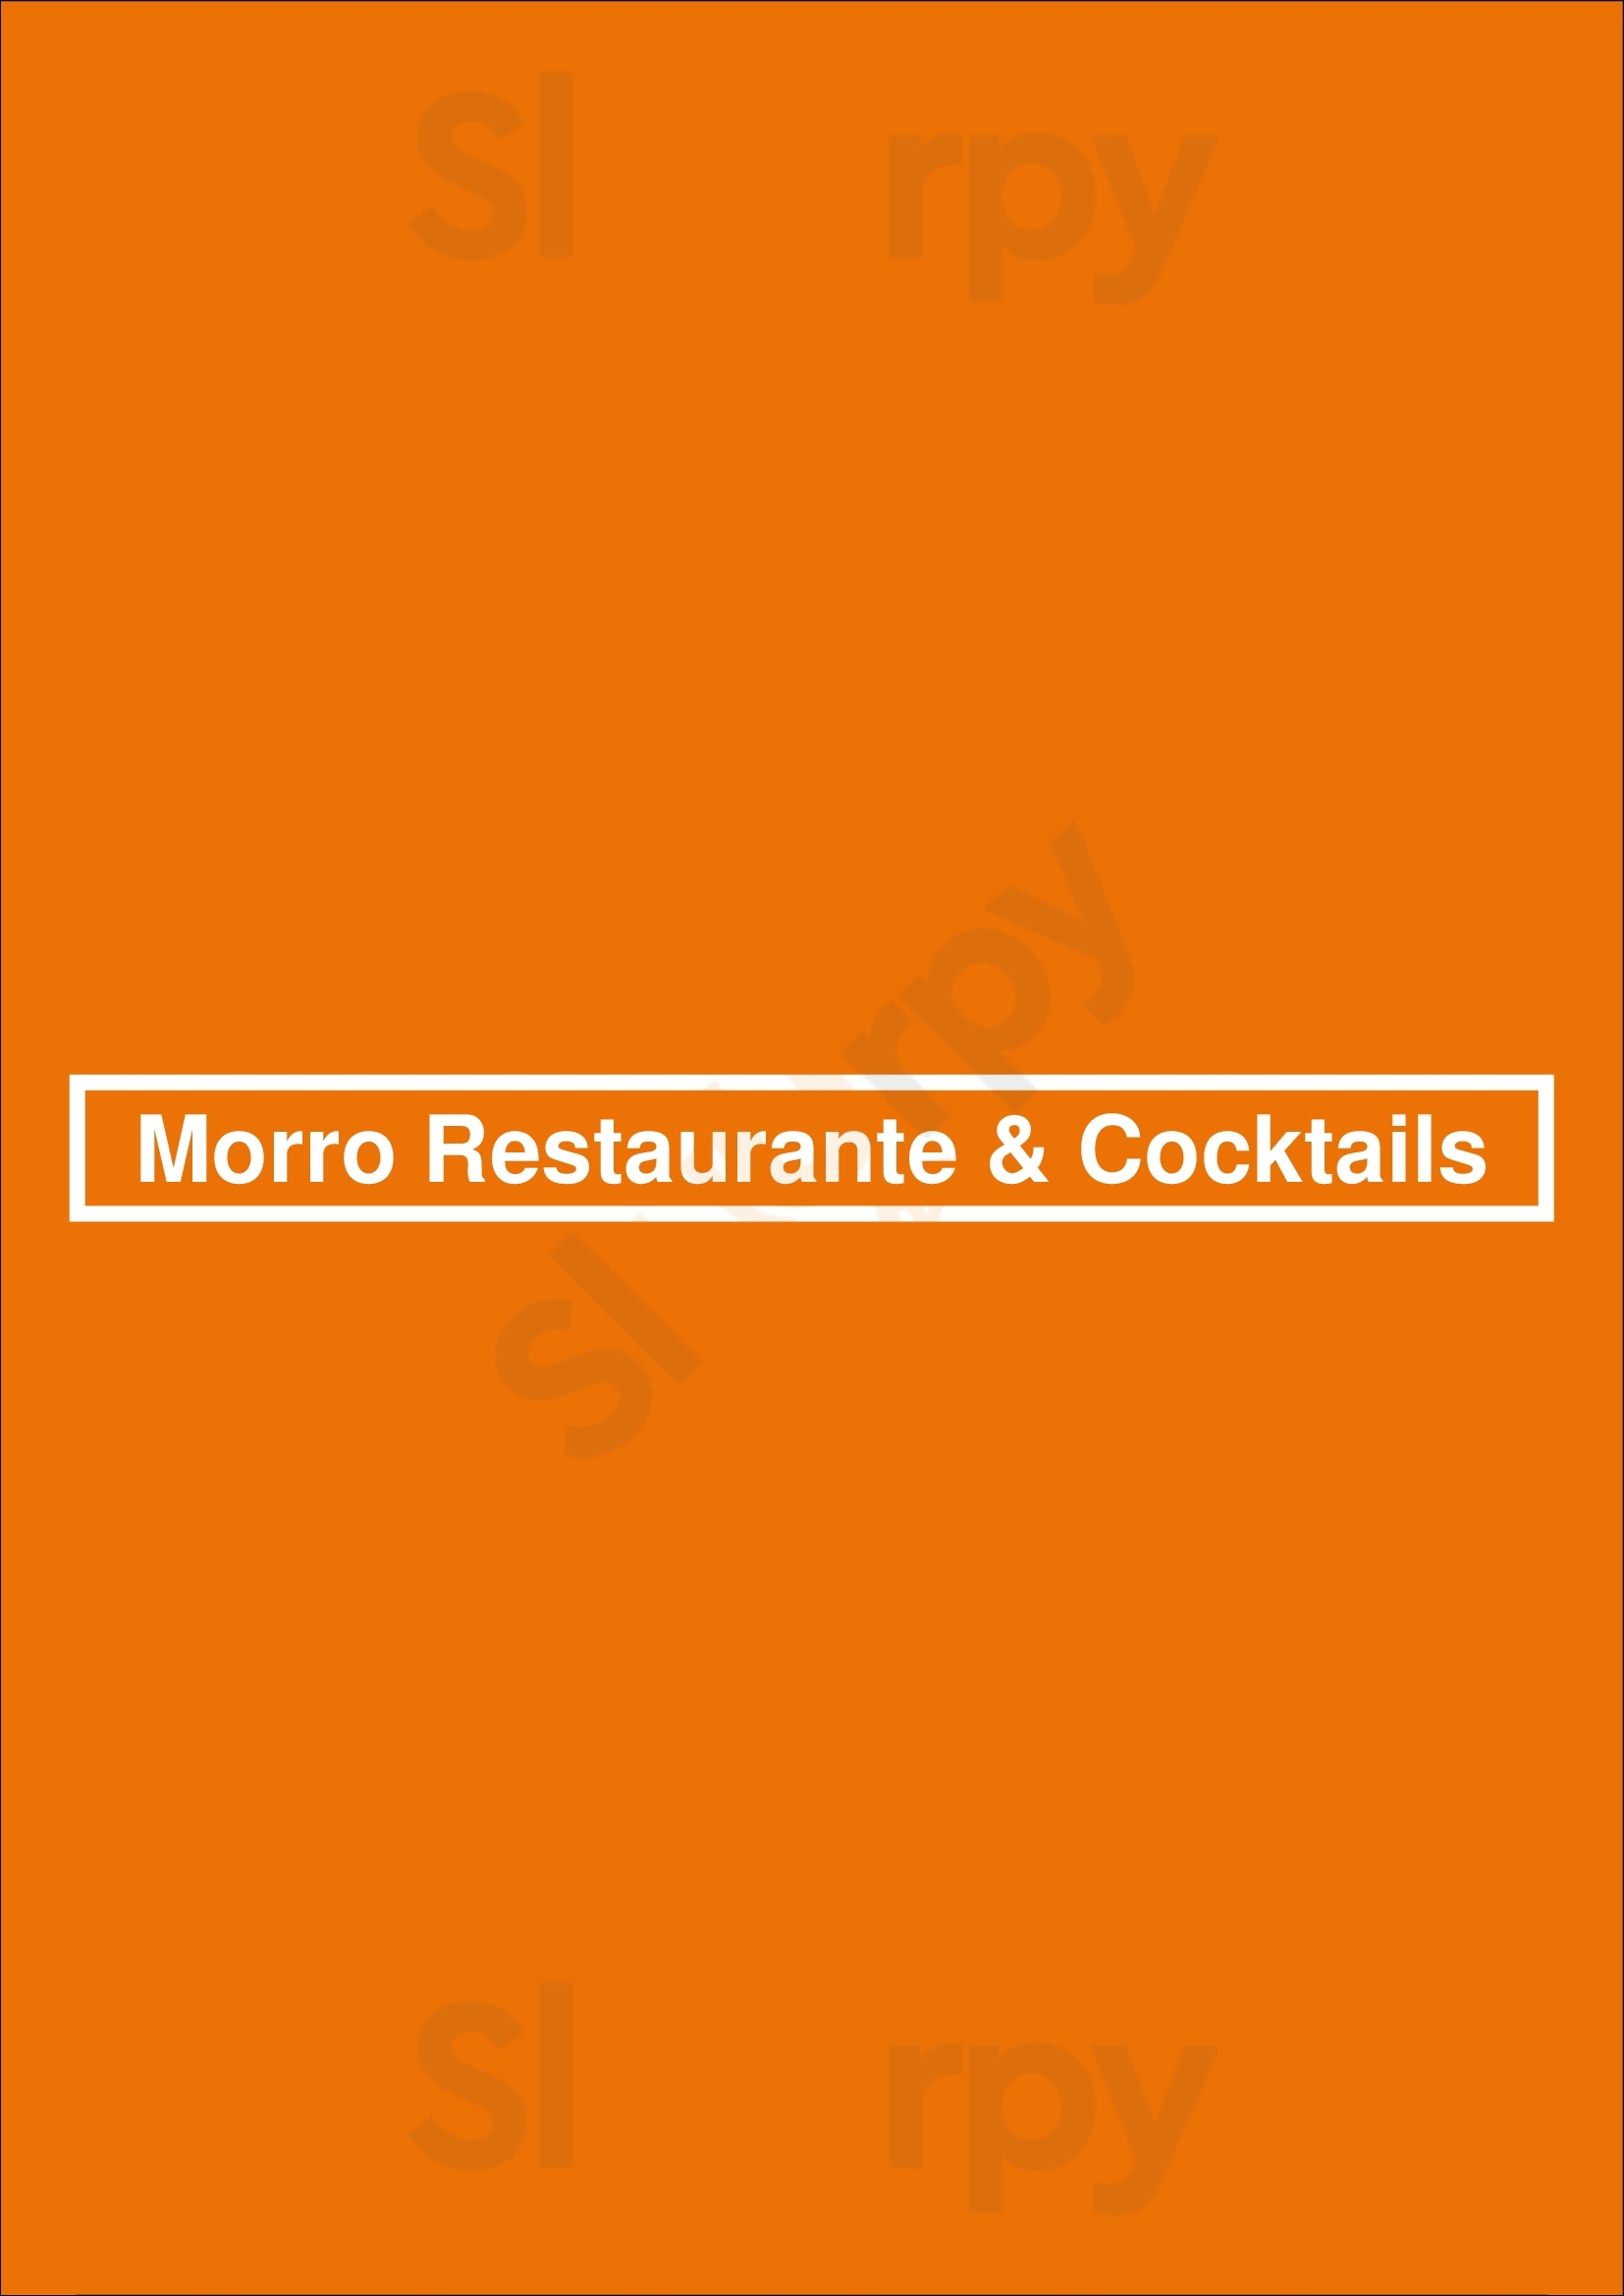 Morro Restaurante & Cocktails Paredes Menu - 1